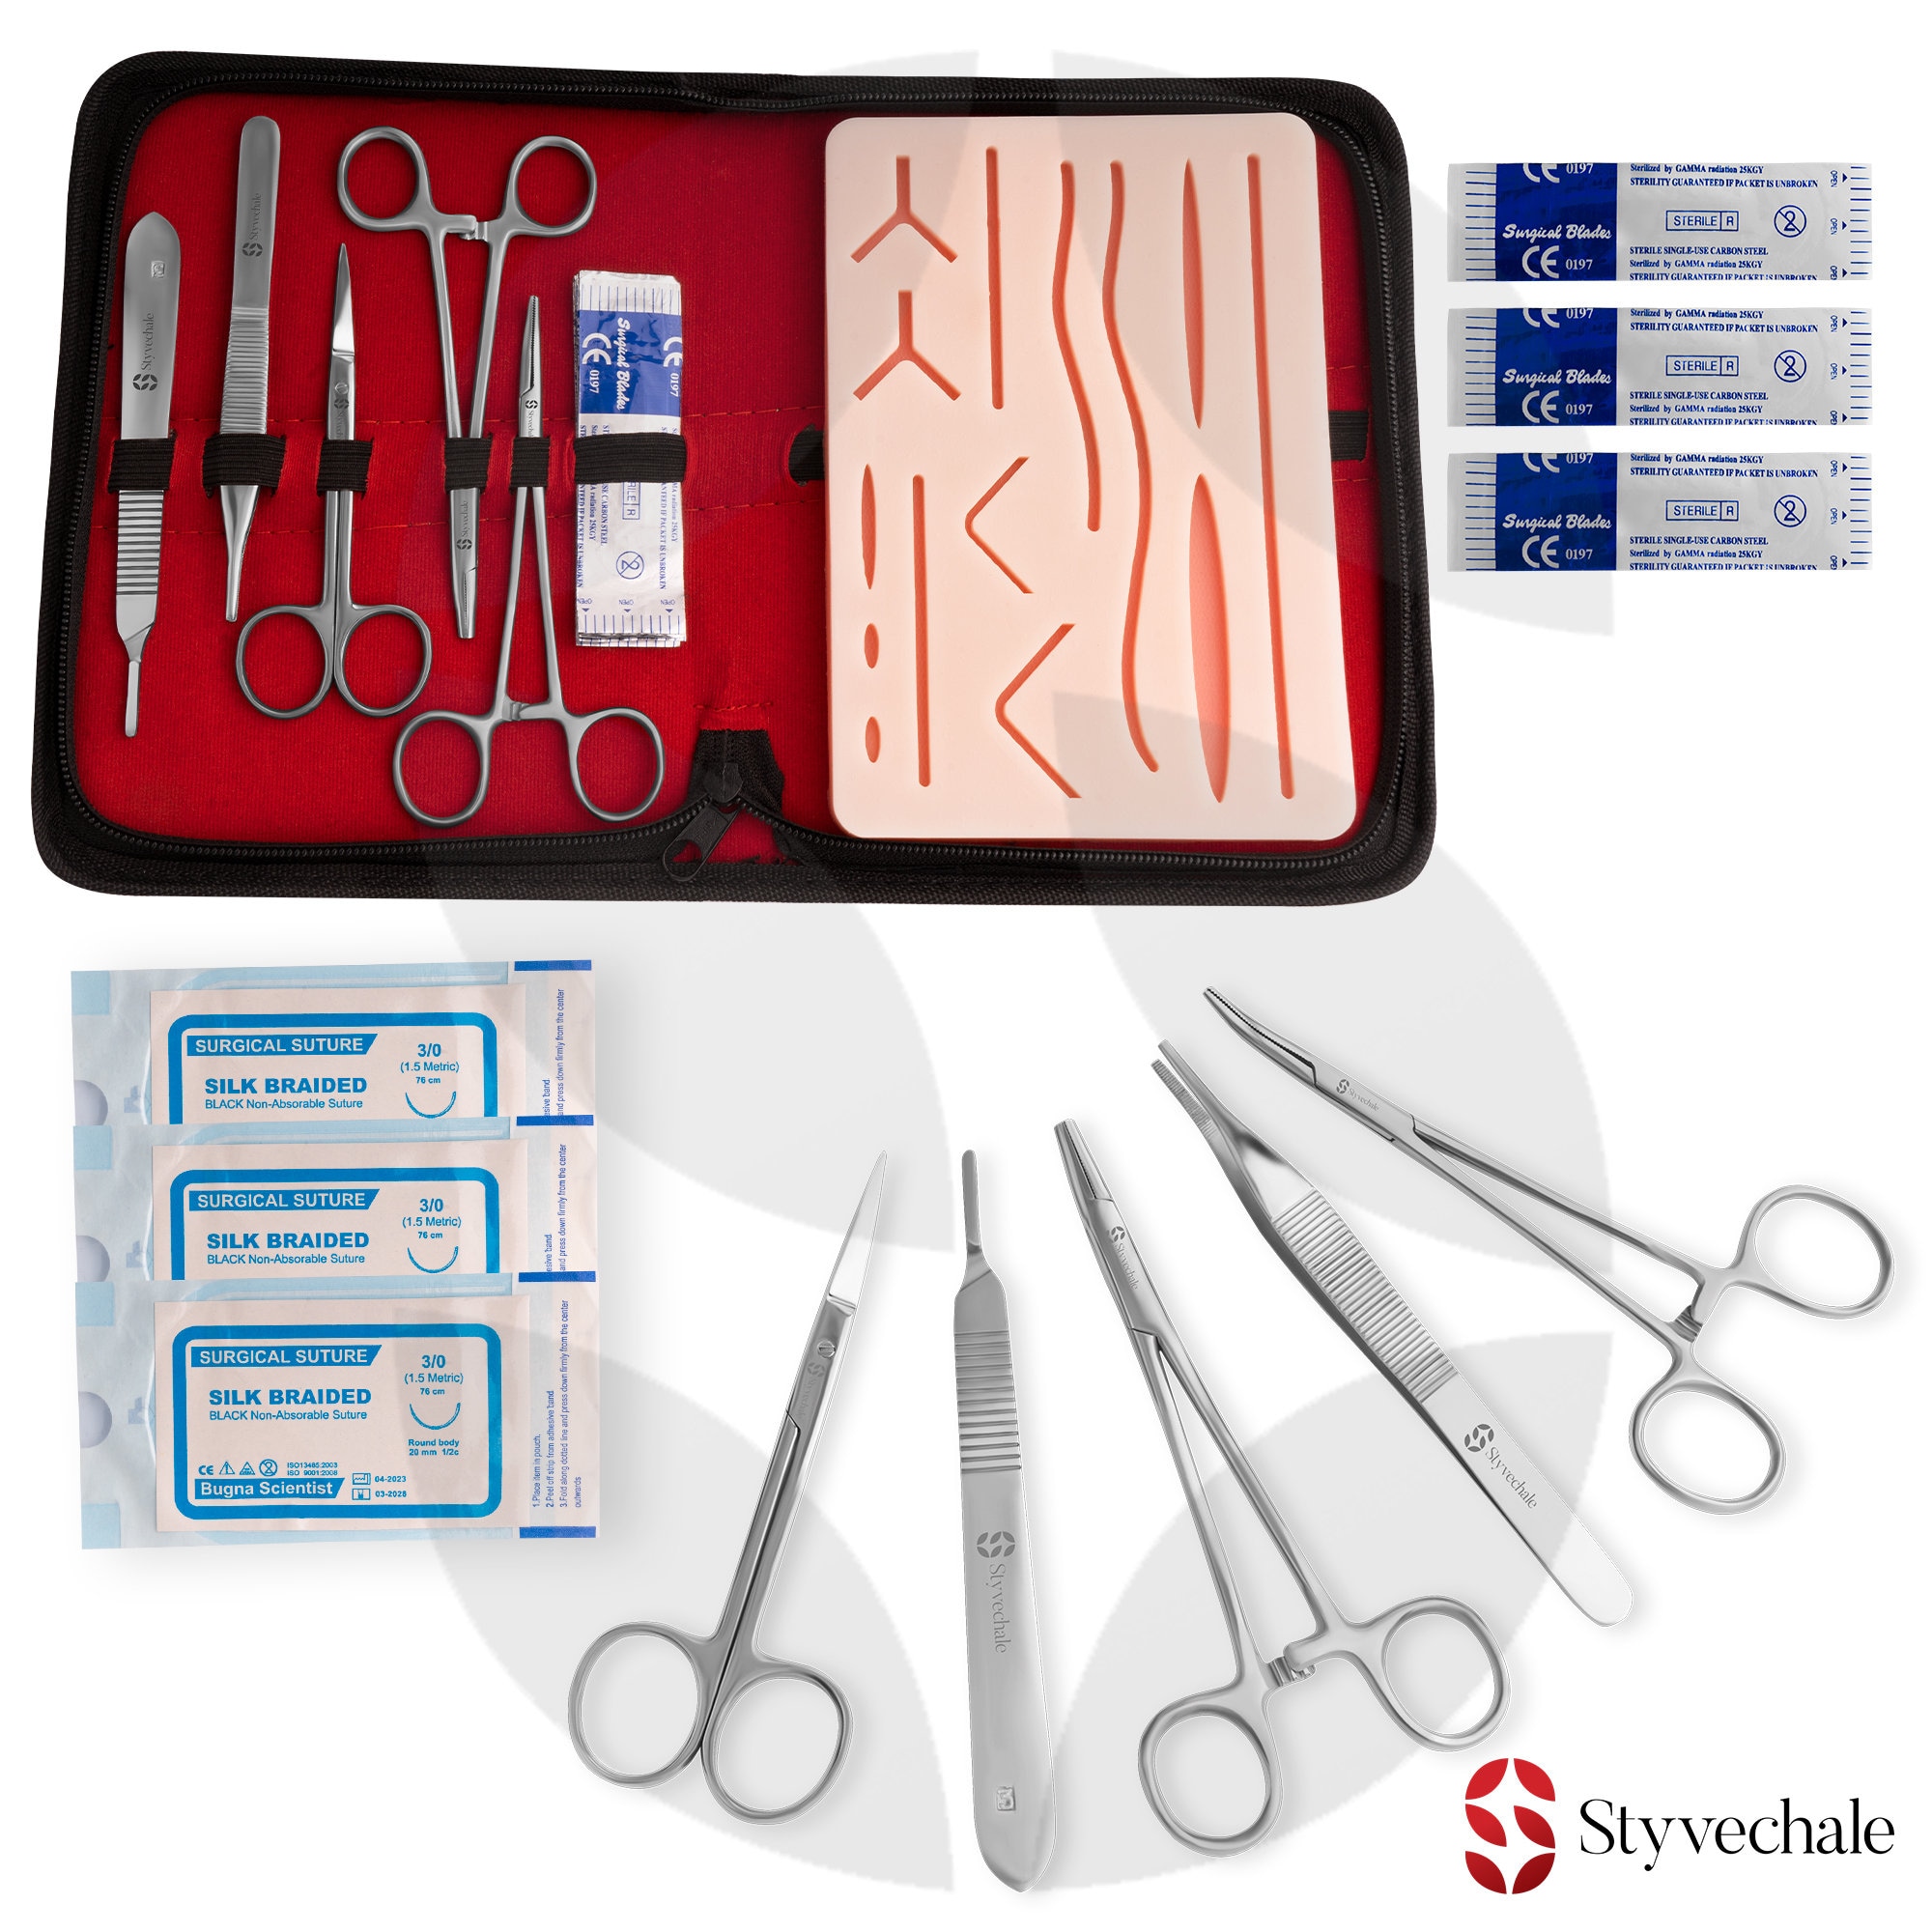 Kit de suture | Kit de pratique de suture pour étudiants en médecine | Kit  de pad et d'outil de suture | Filetage à 24 sutures mixtes avec